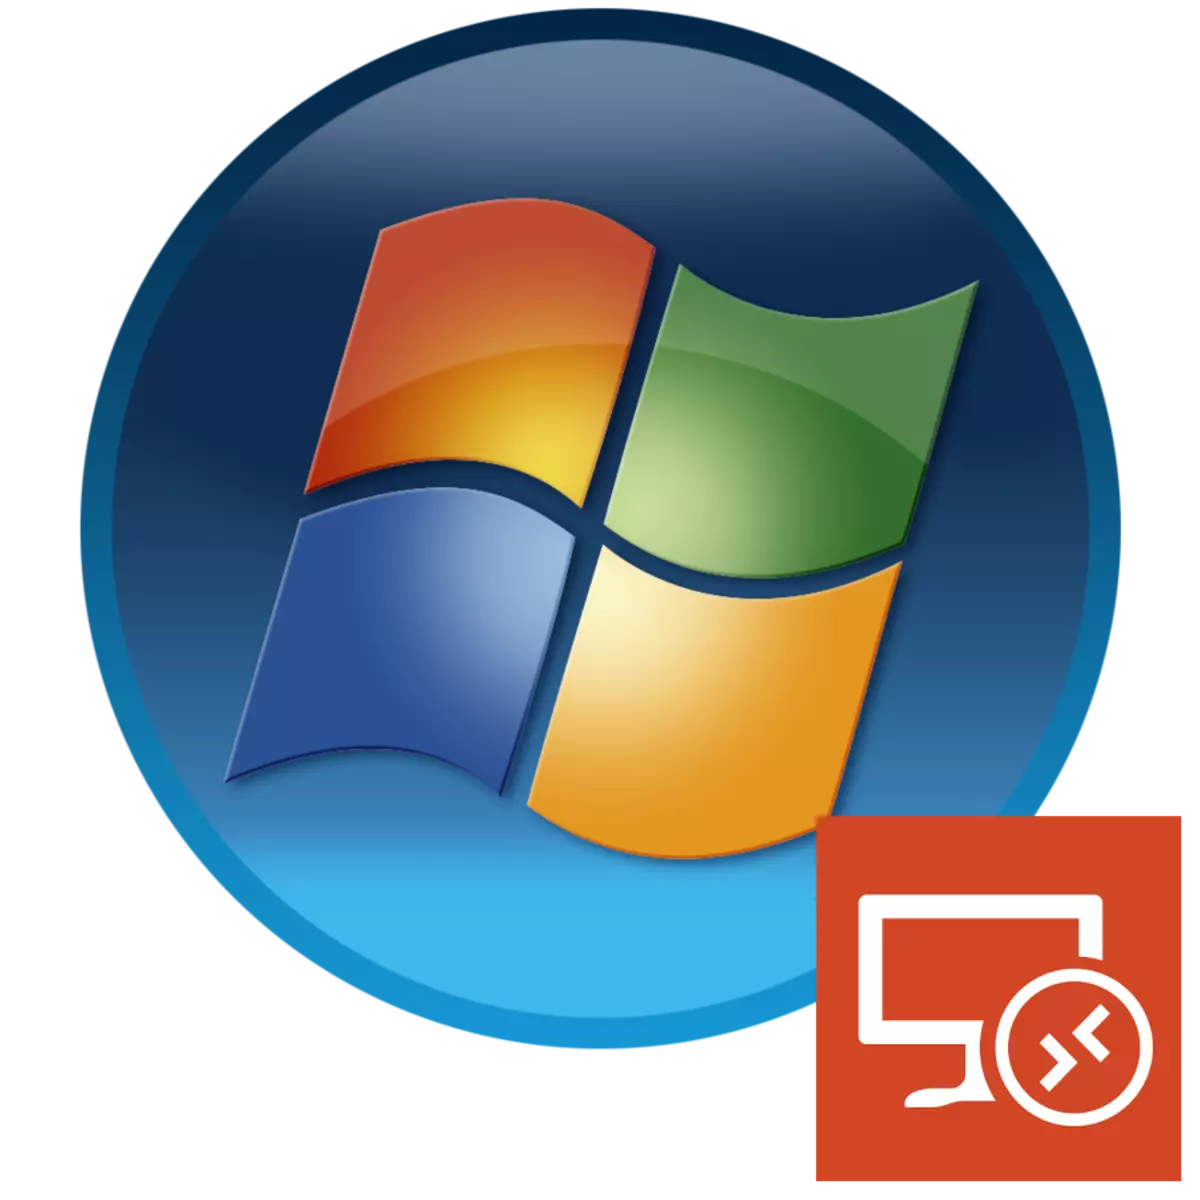 Rdp 8 או rdp 8.1 ב - Windows 7